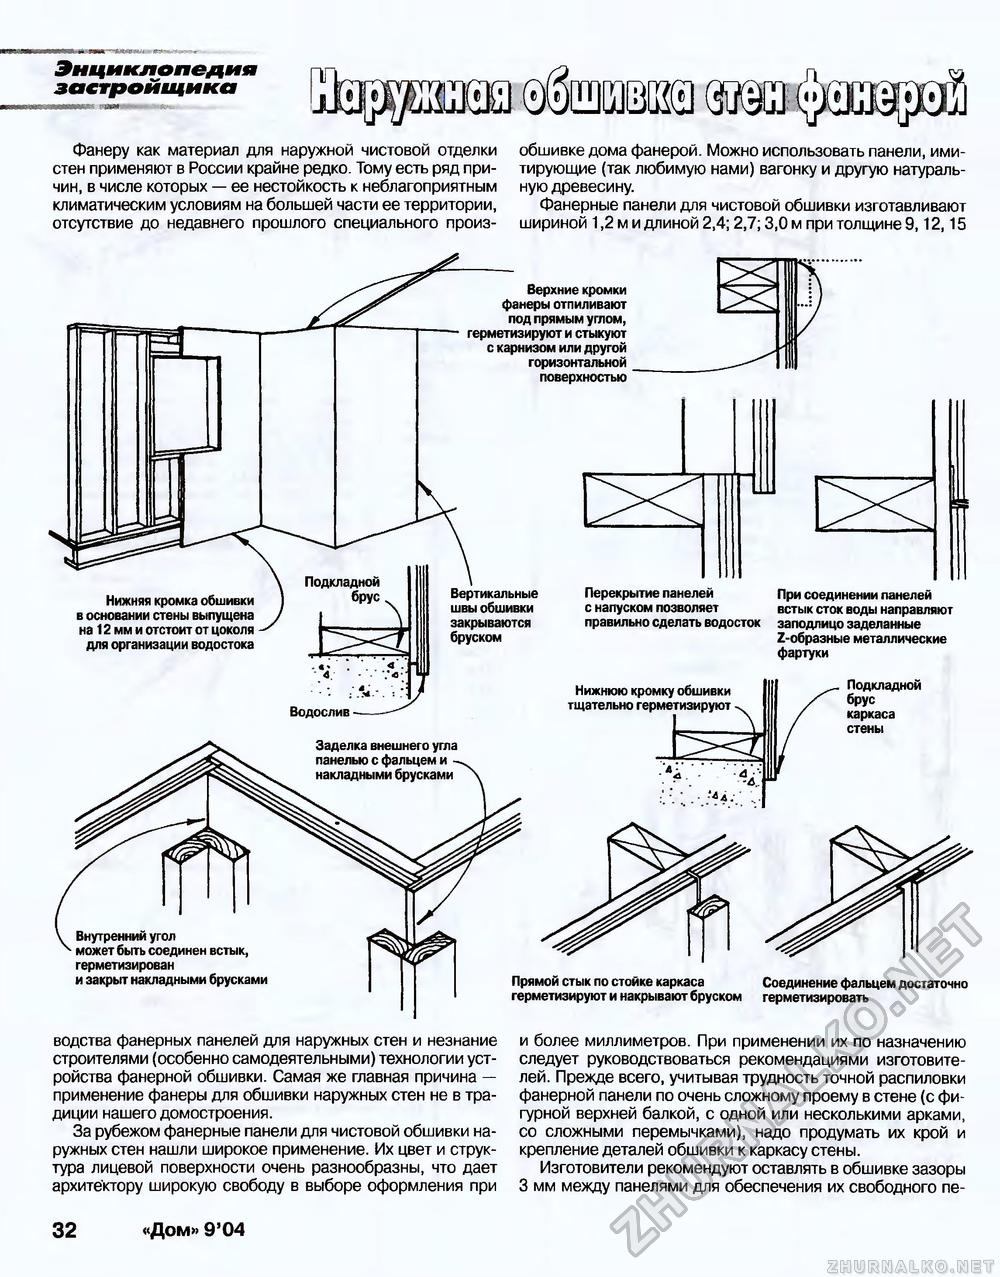 Дом 2004-09, страница 32